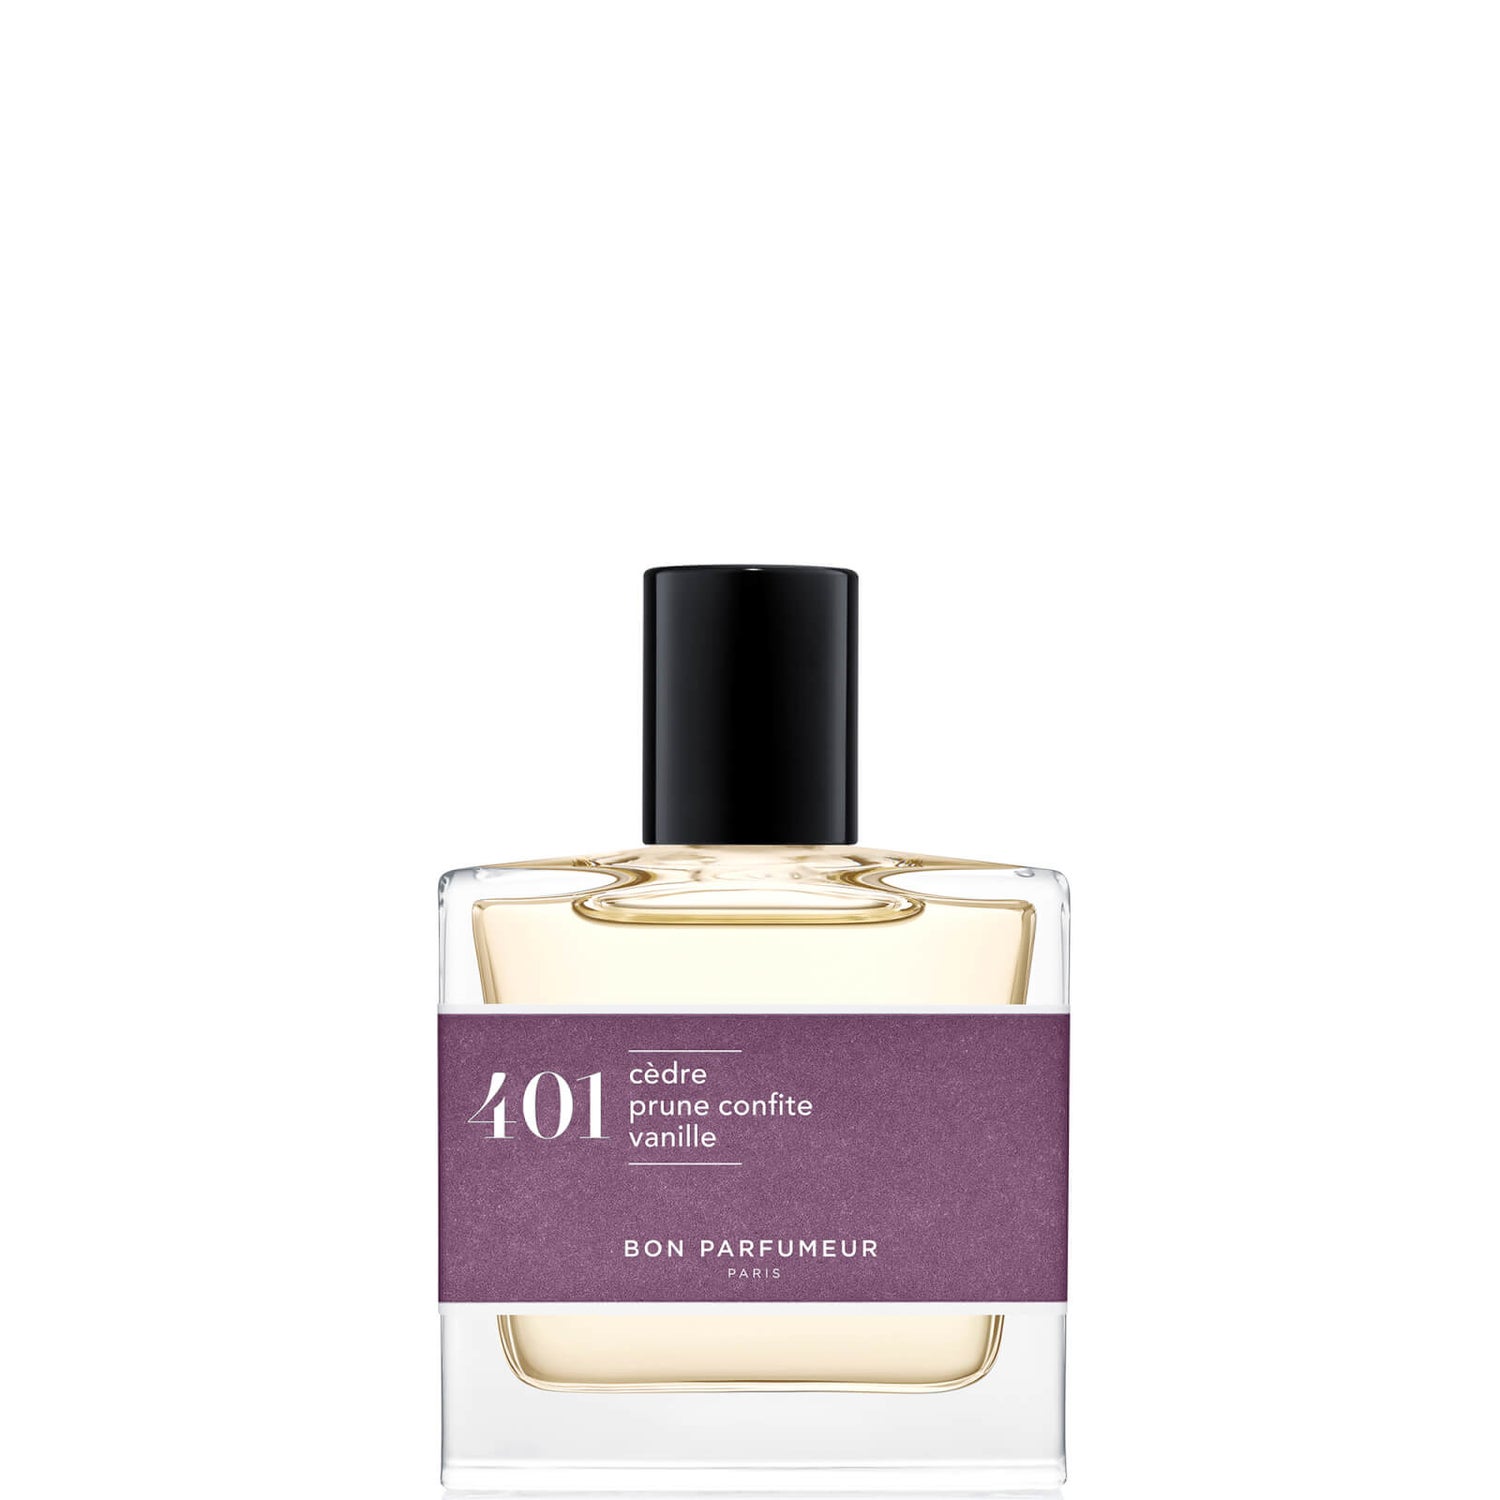 Bon Parfumeur 401 Eau de Parfum de Ciruela Confitada y Vainilla - 30ml